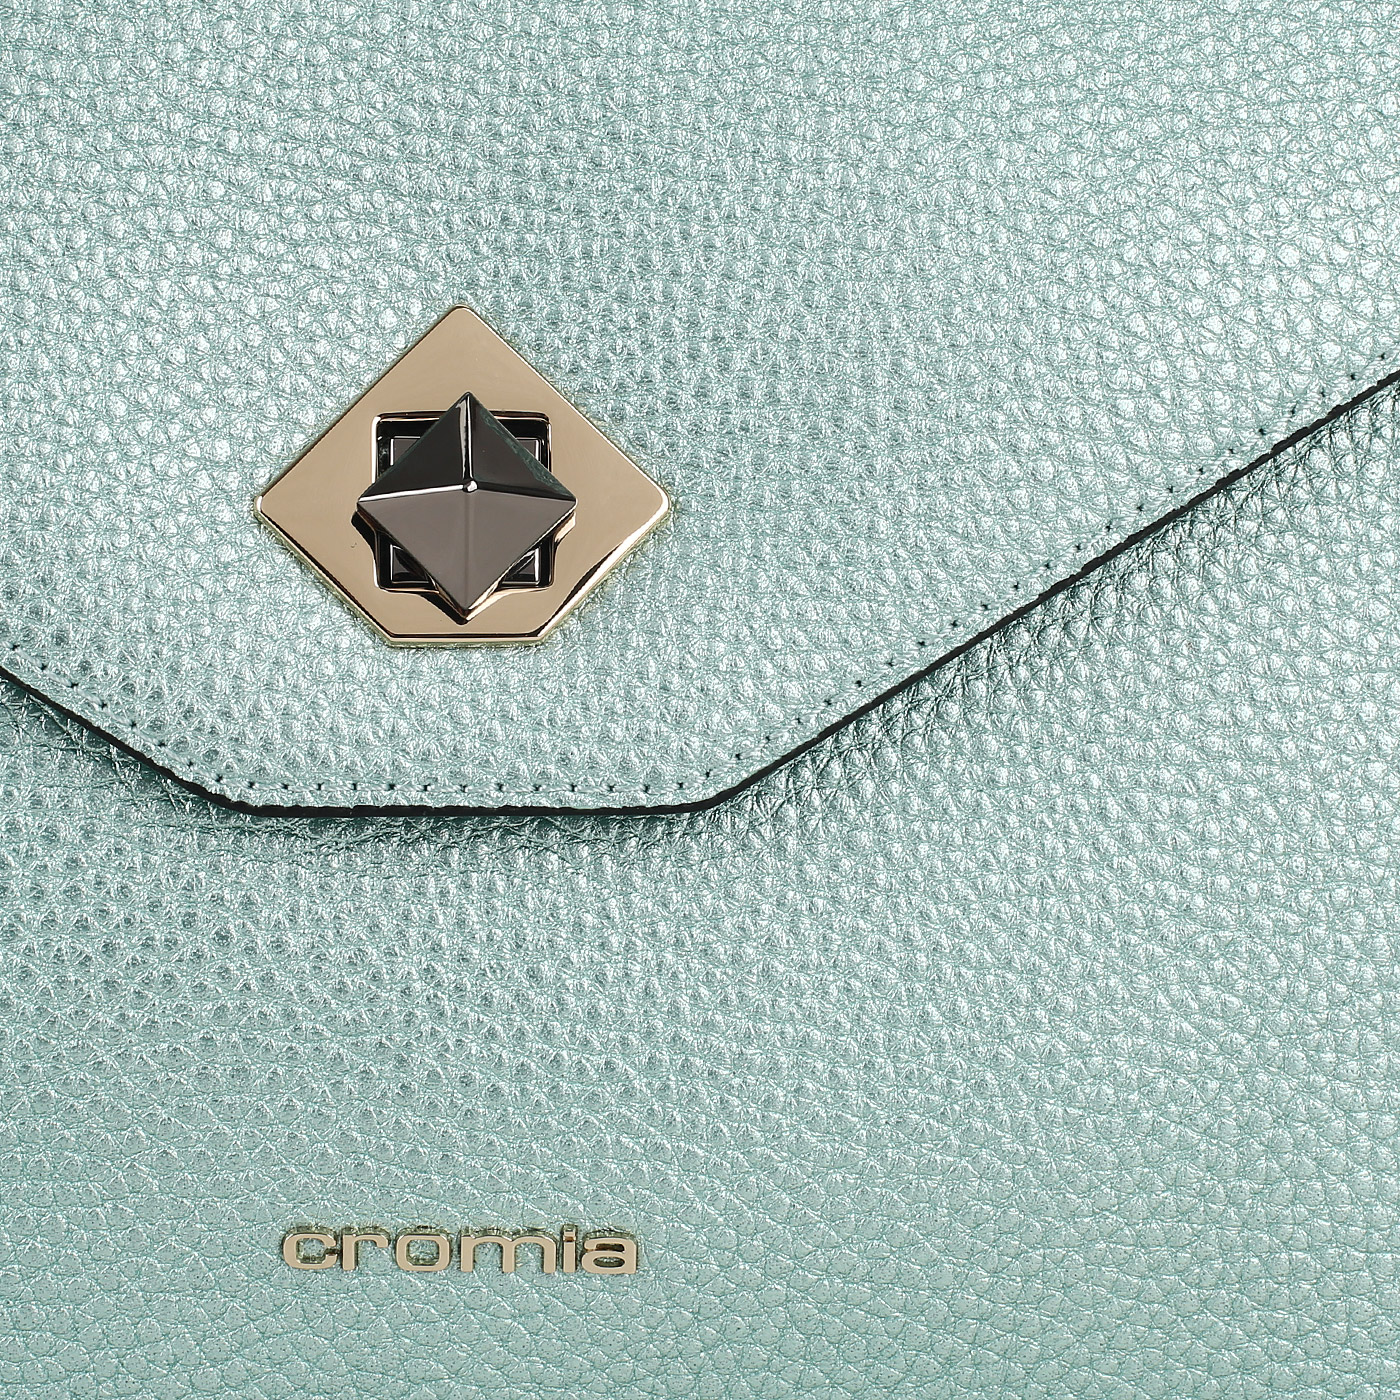 Металлизированная кожаная сумка Cromia Mina